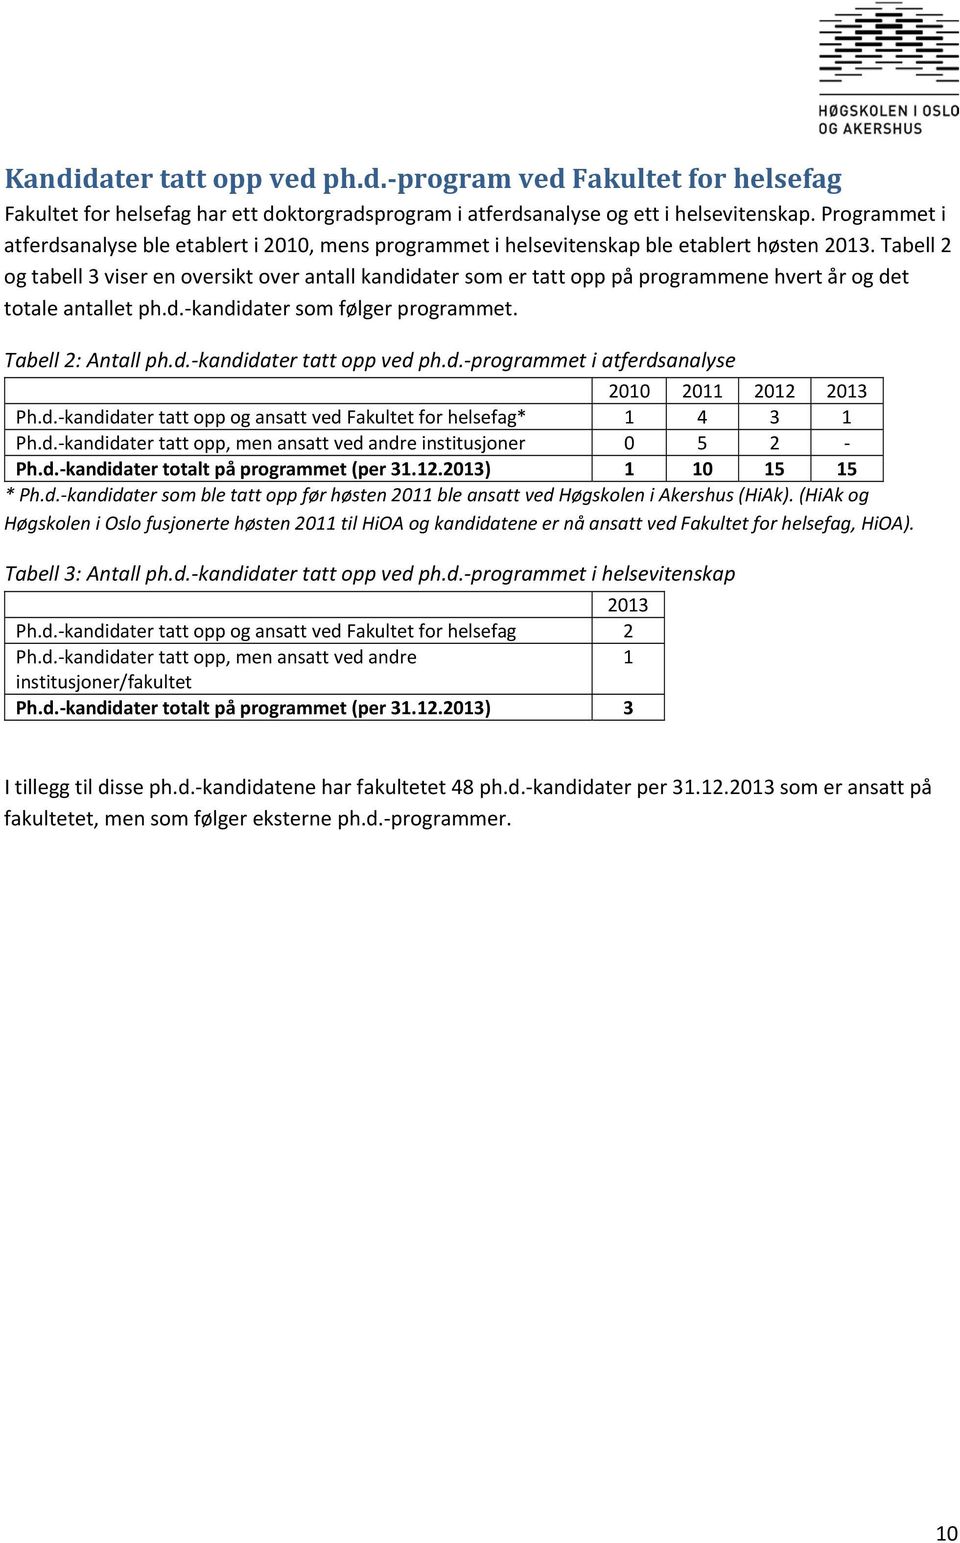 Tabell 2 og tabell 3 viser en oversikt over antall kandidater som er tatt opp på programmene hvert år og det totale antallet ph.d. kandidater som følger programmet. Tabell 2: Antall ph.d. kandidater tatt opp ved ph.